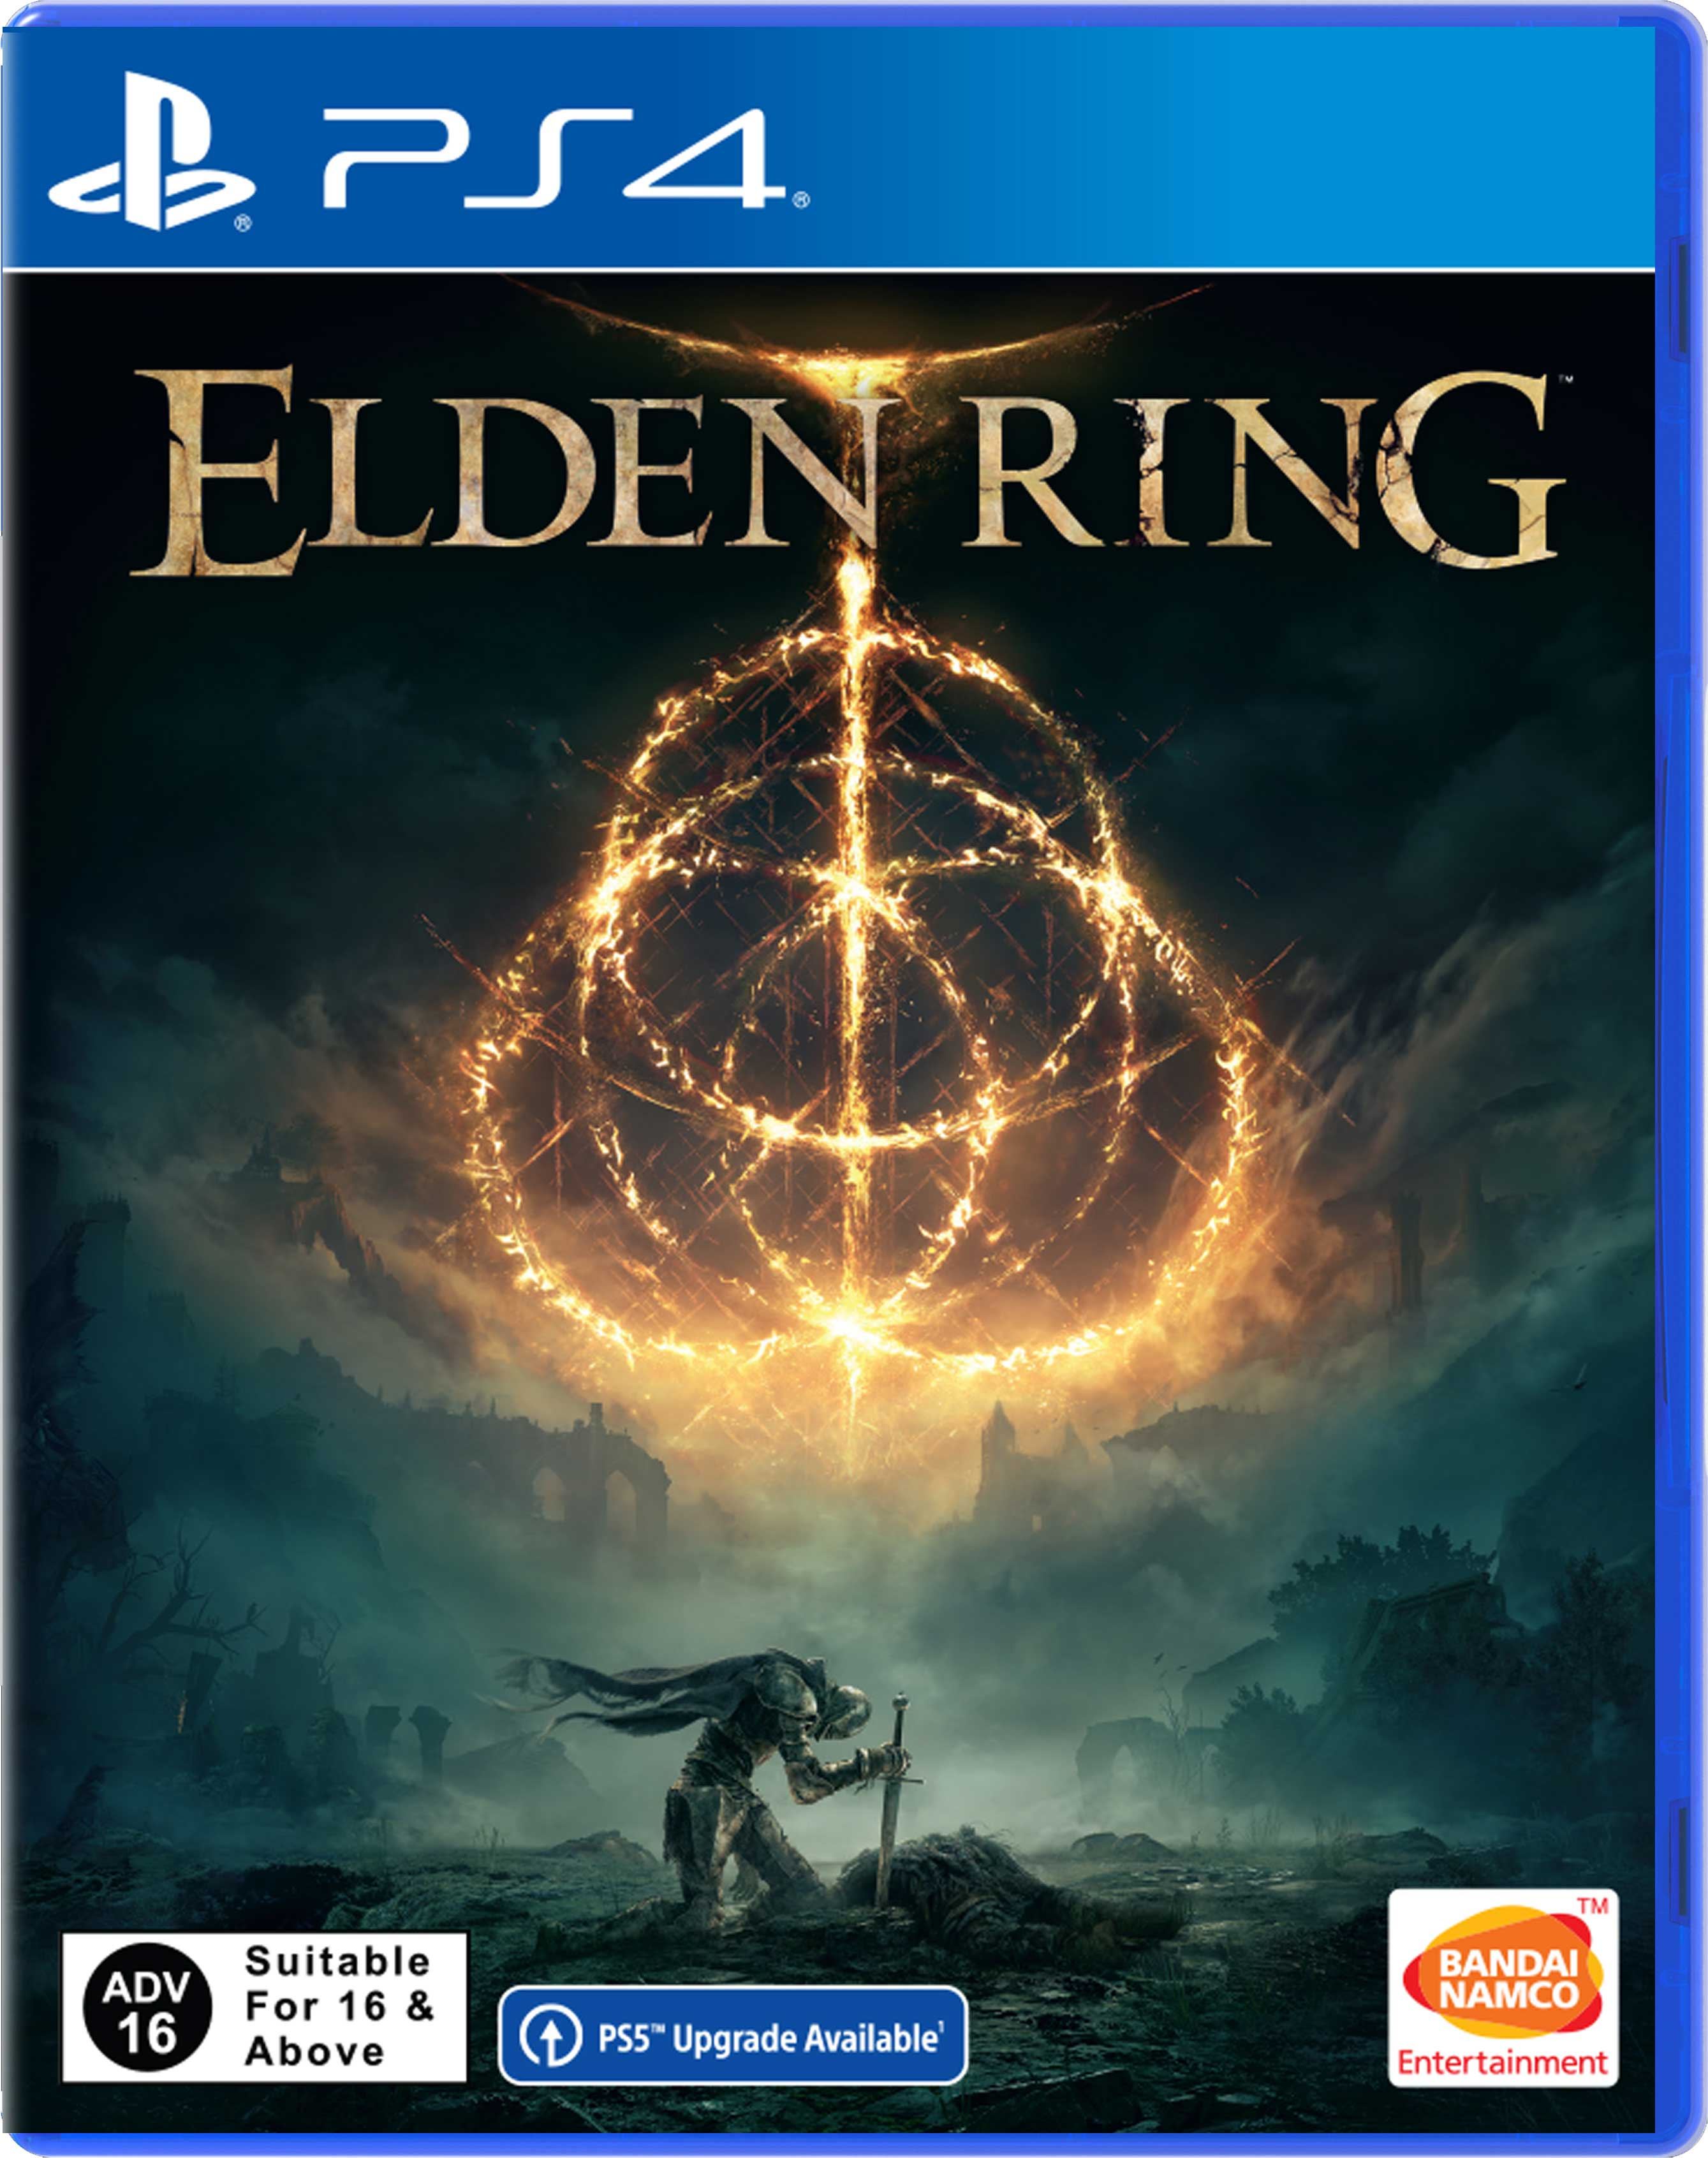 Elden Ring (PS4)